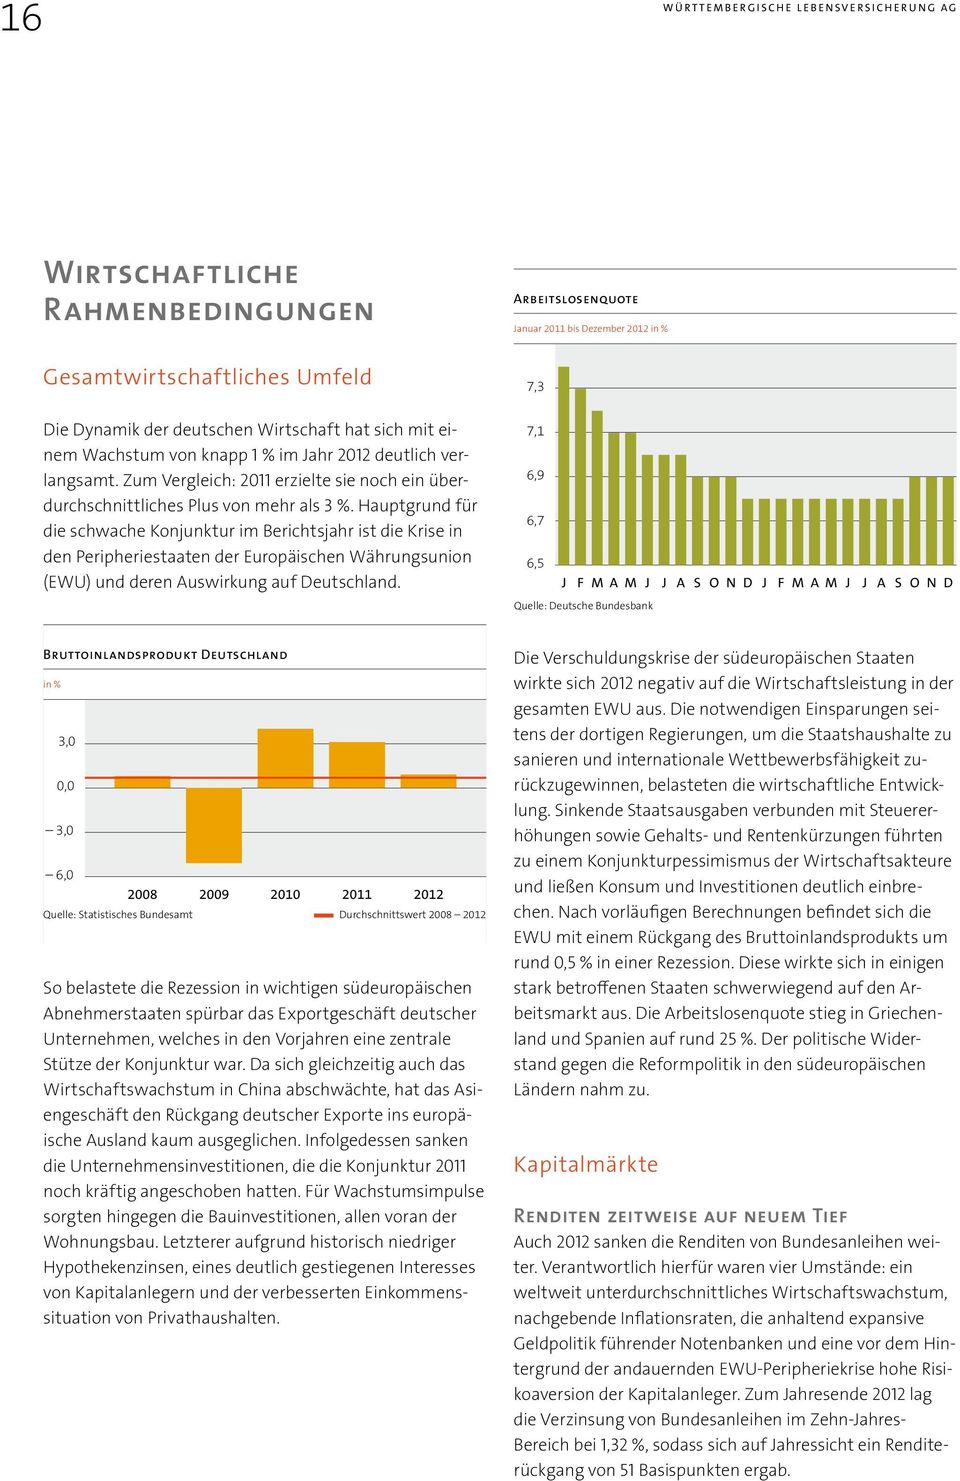 Hauptgrund für die schwache Konjunktur im Berichtsjahr ist die Krise in den Peripheriestaaten der Europäischen Währungsunion (EWU) und deren Auswirkung auf Deutschland.